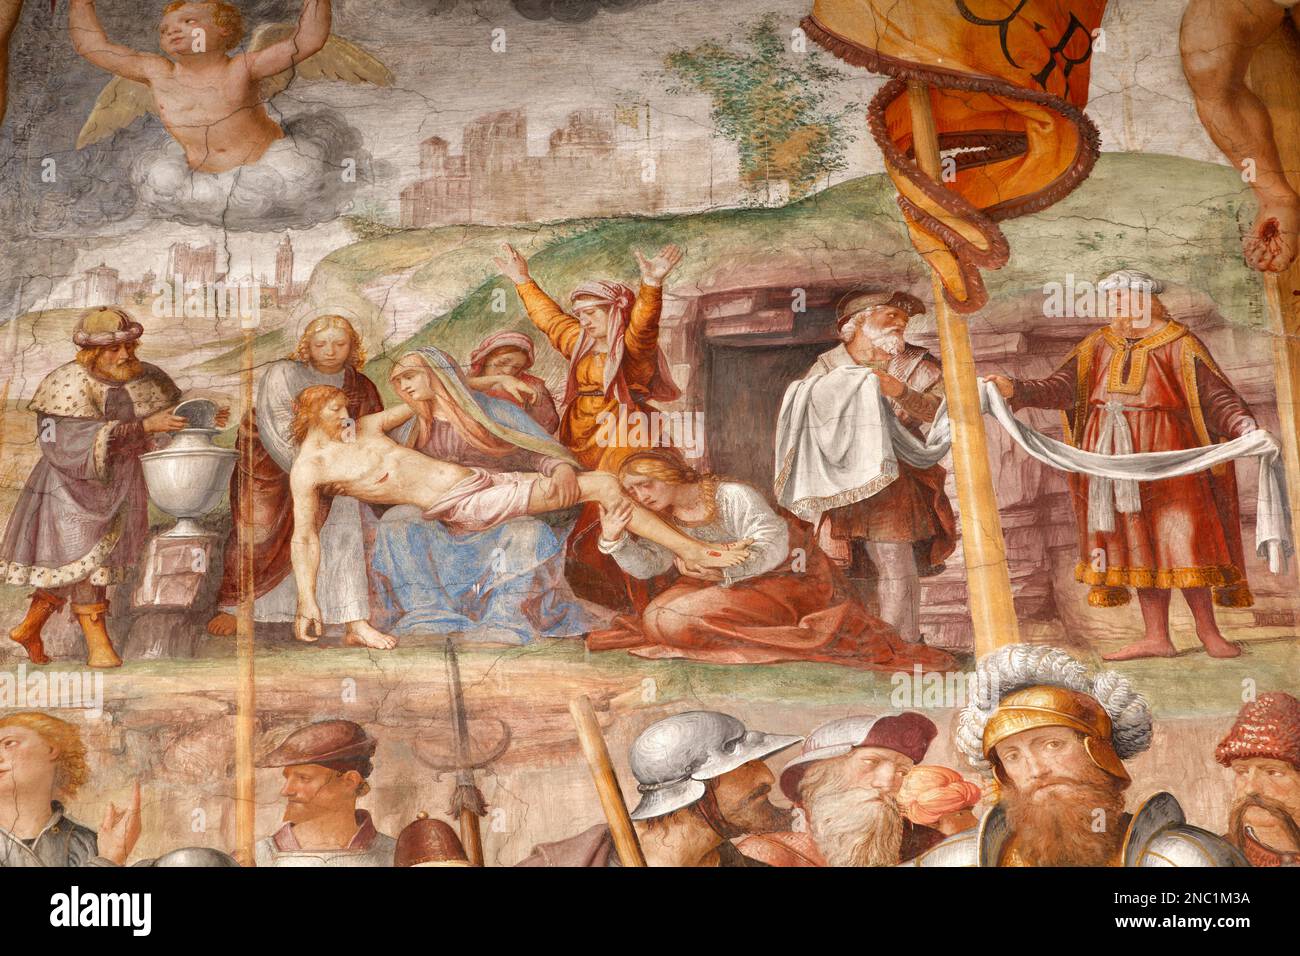 Détail de la passion et de la crucifixion, 1529 AD (par Bernardino Luini, disciple de Léonard) - Église de Santa Maria degli Angioli, Lugano, Suisse Banque D'Images